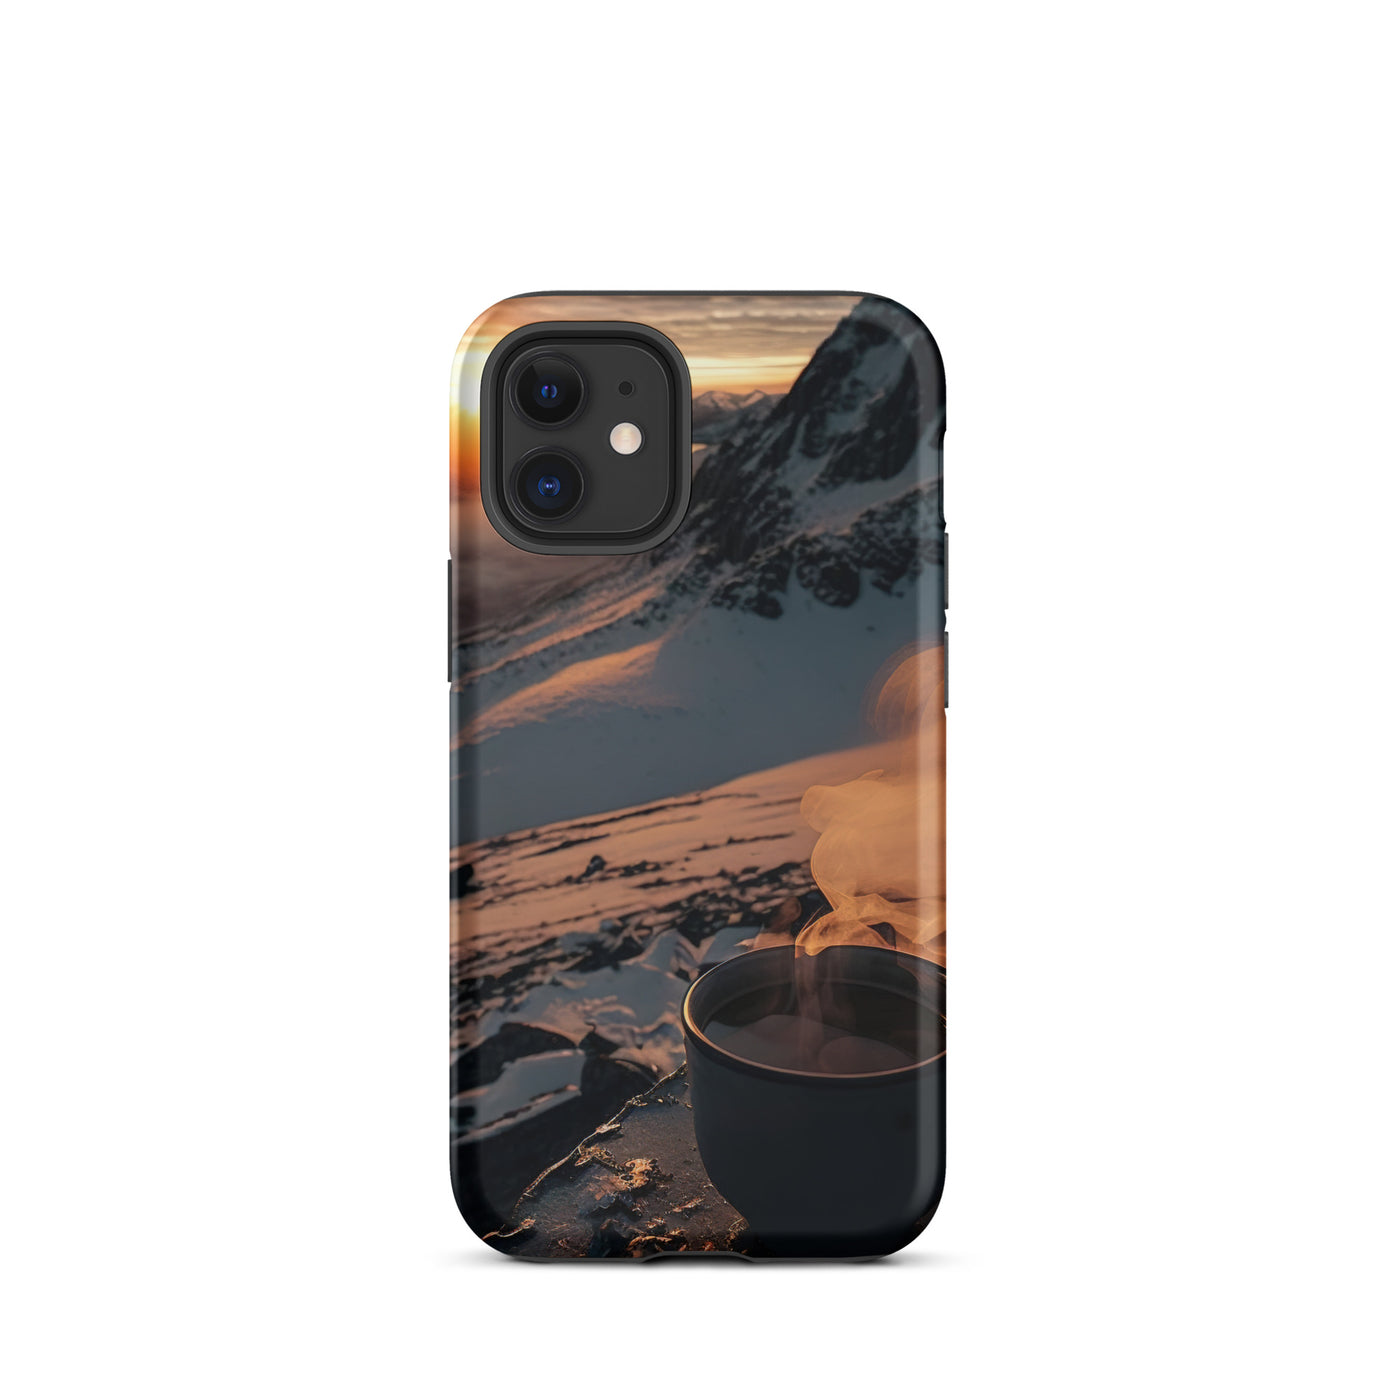 Heißer Kaffee auf einem schneebedeckten Berg - iPhone Schutzhülle (robust) berge xxx iPhone 12 mini